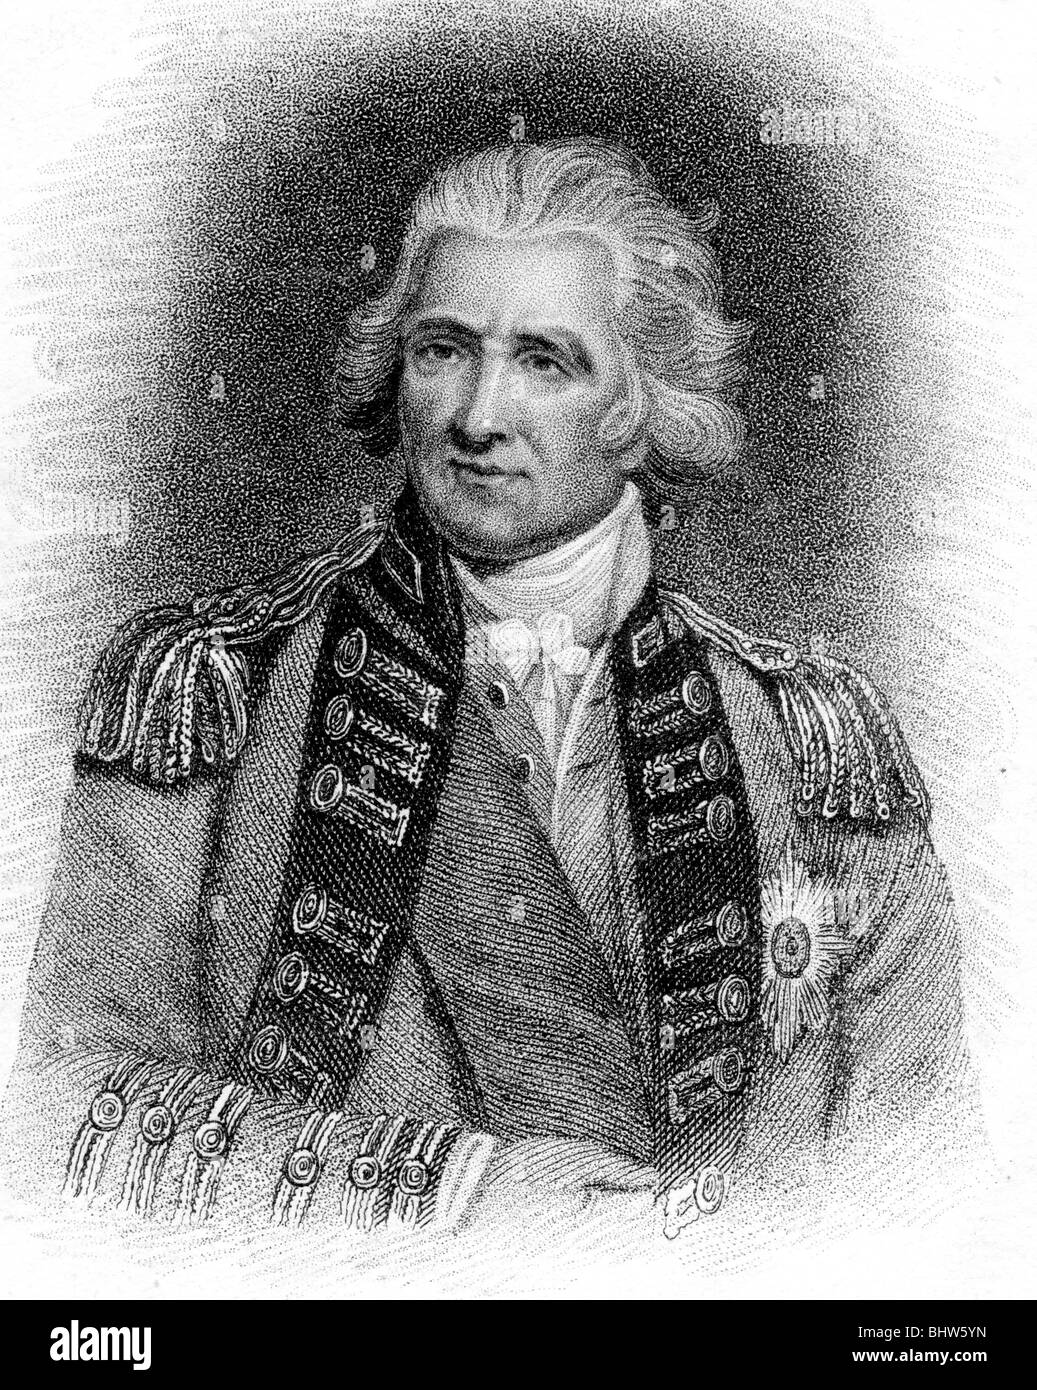 Le LIEUTENANT-GÉNÉRAL SIR RALPH Abercromby (aka ABERCROMBIE) - Soldat de l'armée britannique (1734-1801) Banque D'Images